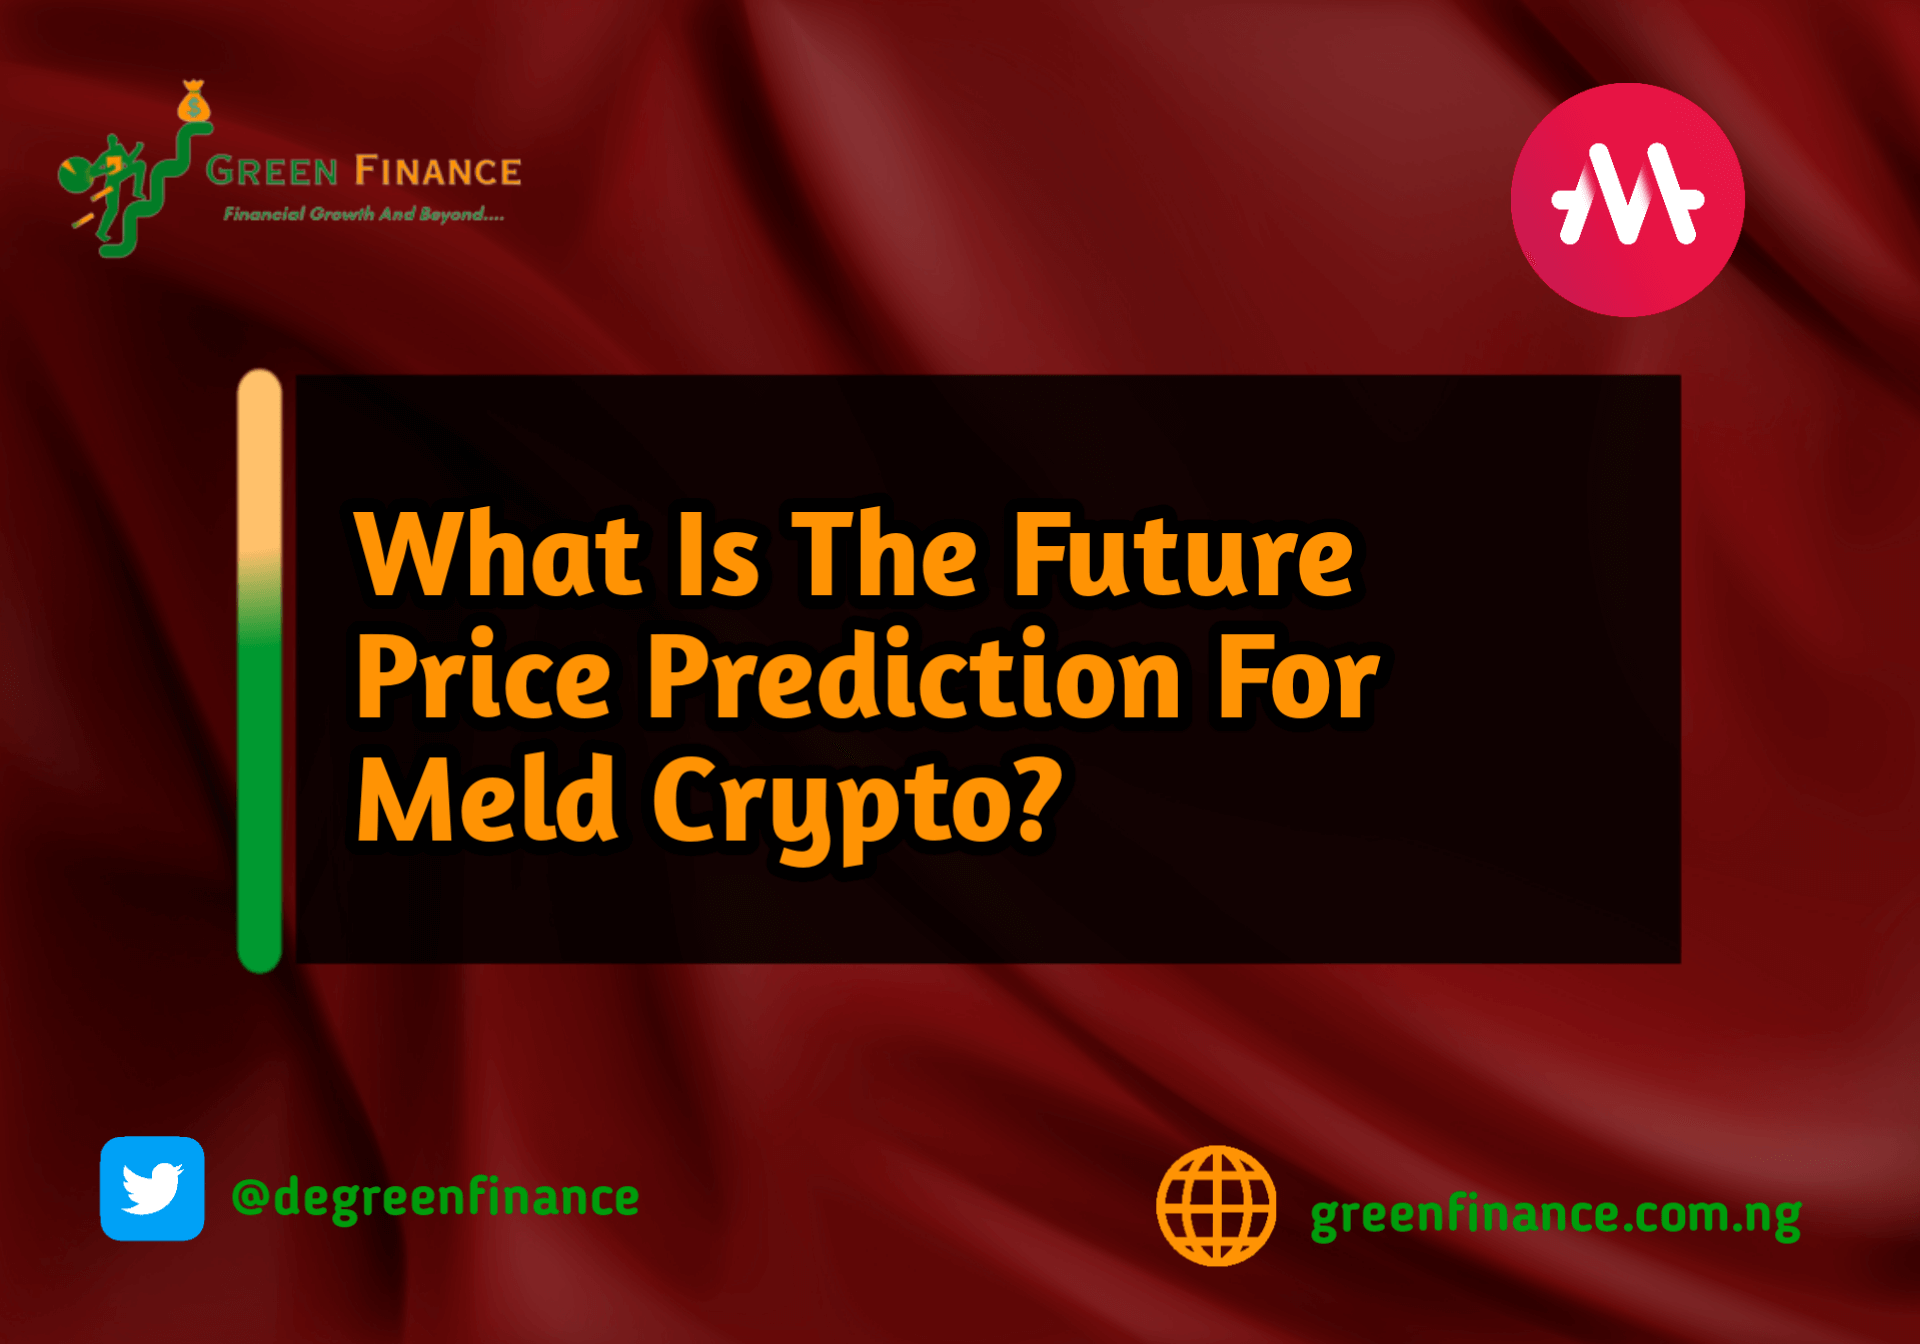 Meld price prediction